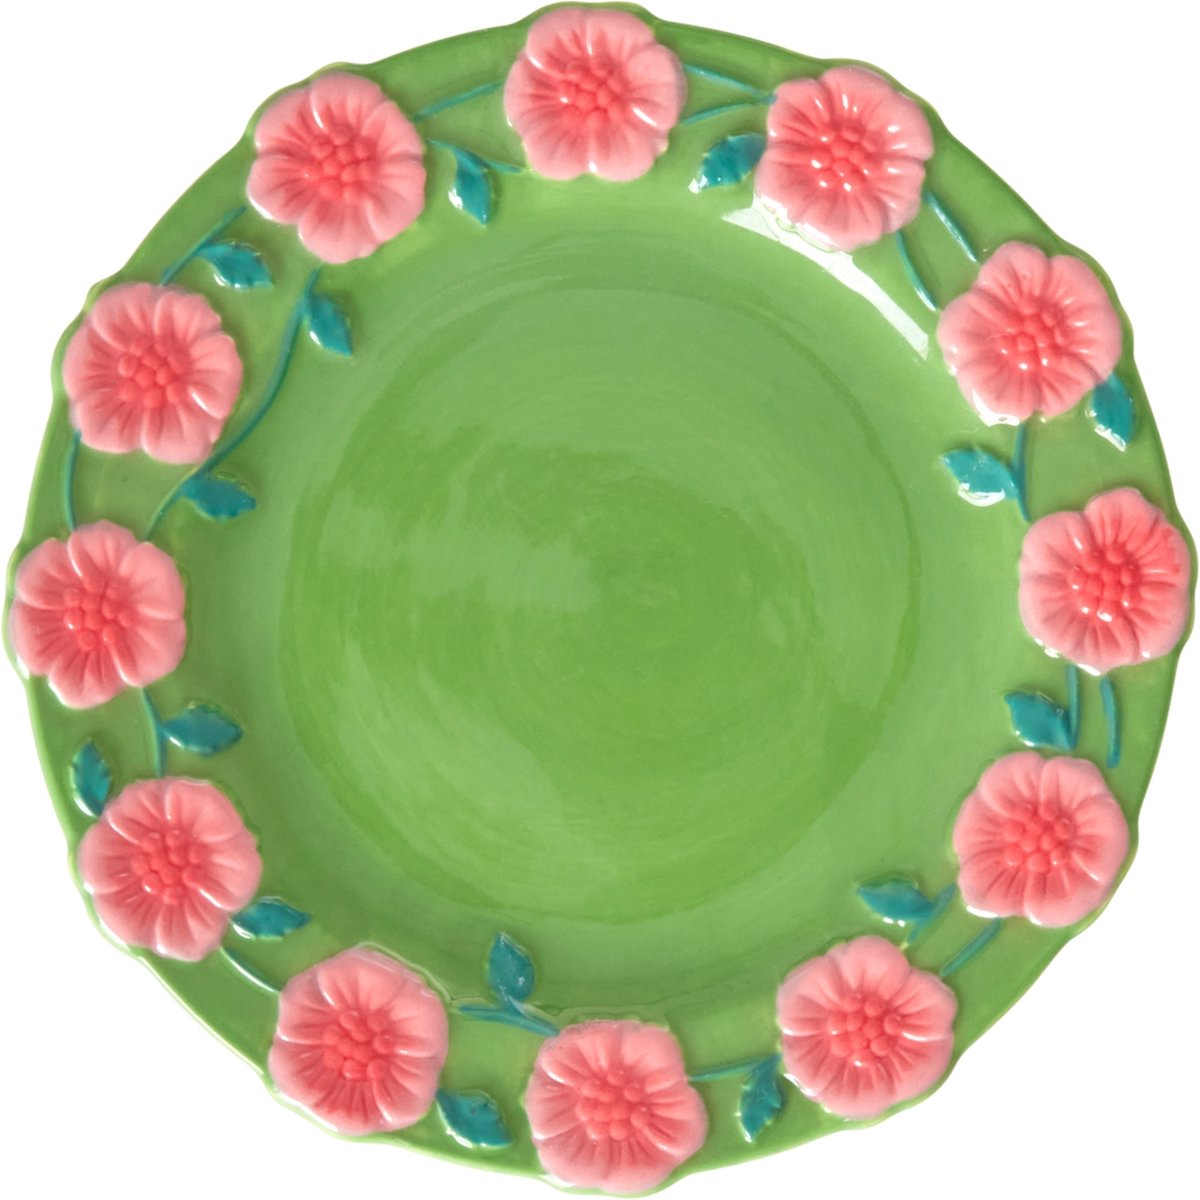 Rice by Rice - gebaksbord - groen - roze bloemen - ⌀15cm - keramiek - kleurrijk servies